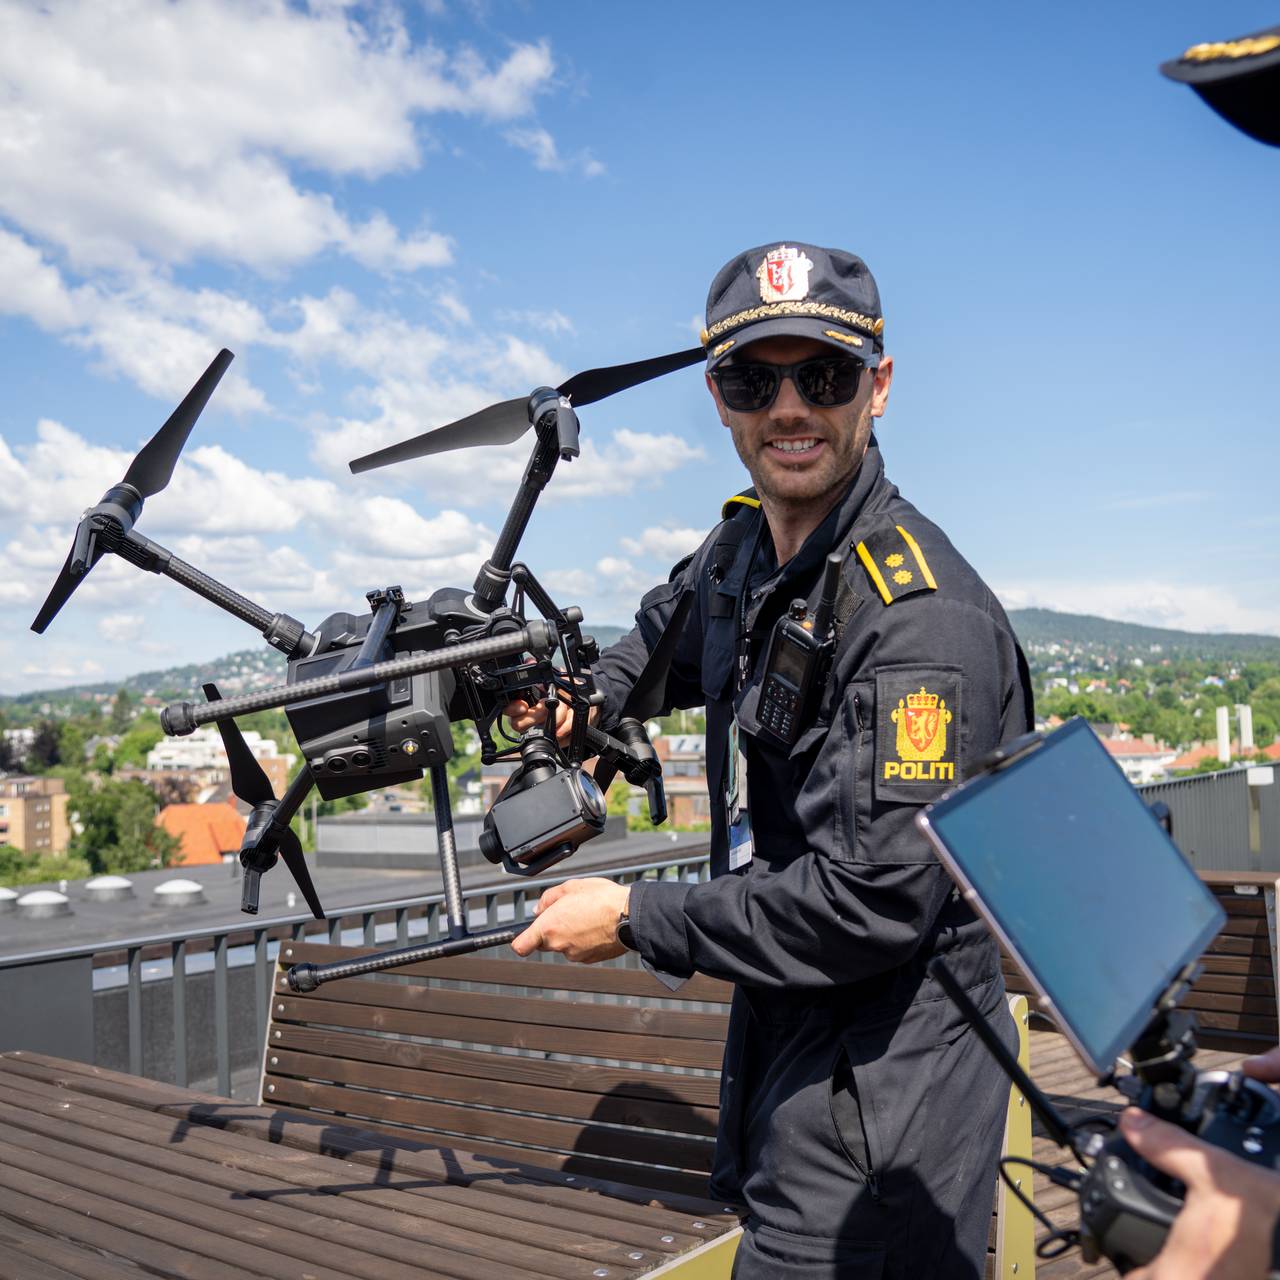 Potitet tar i bruk drone operative hendelser